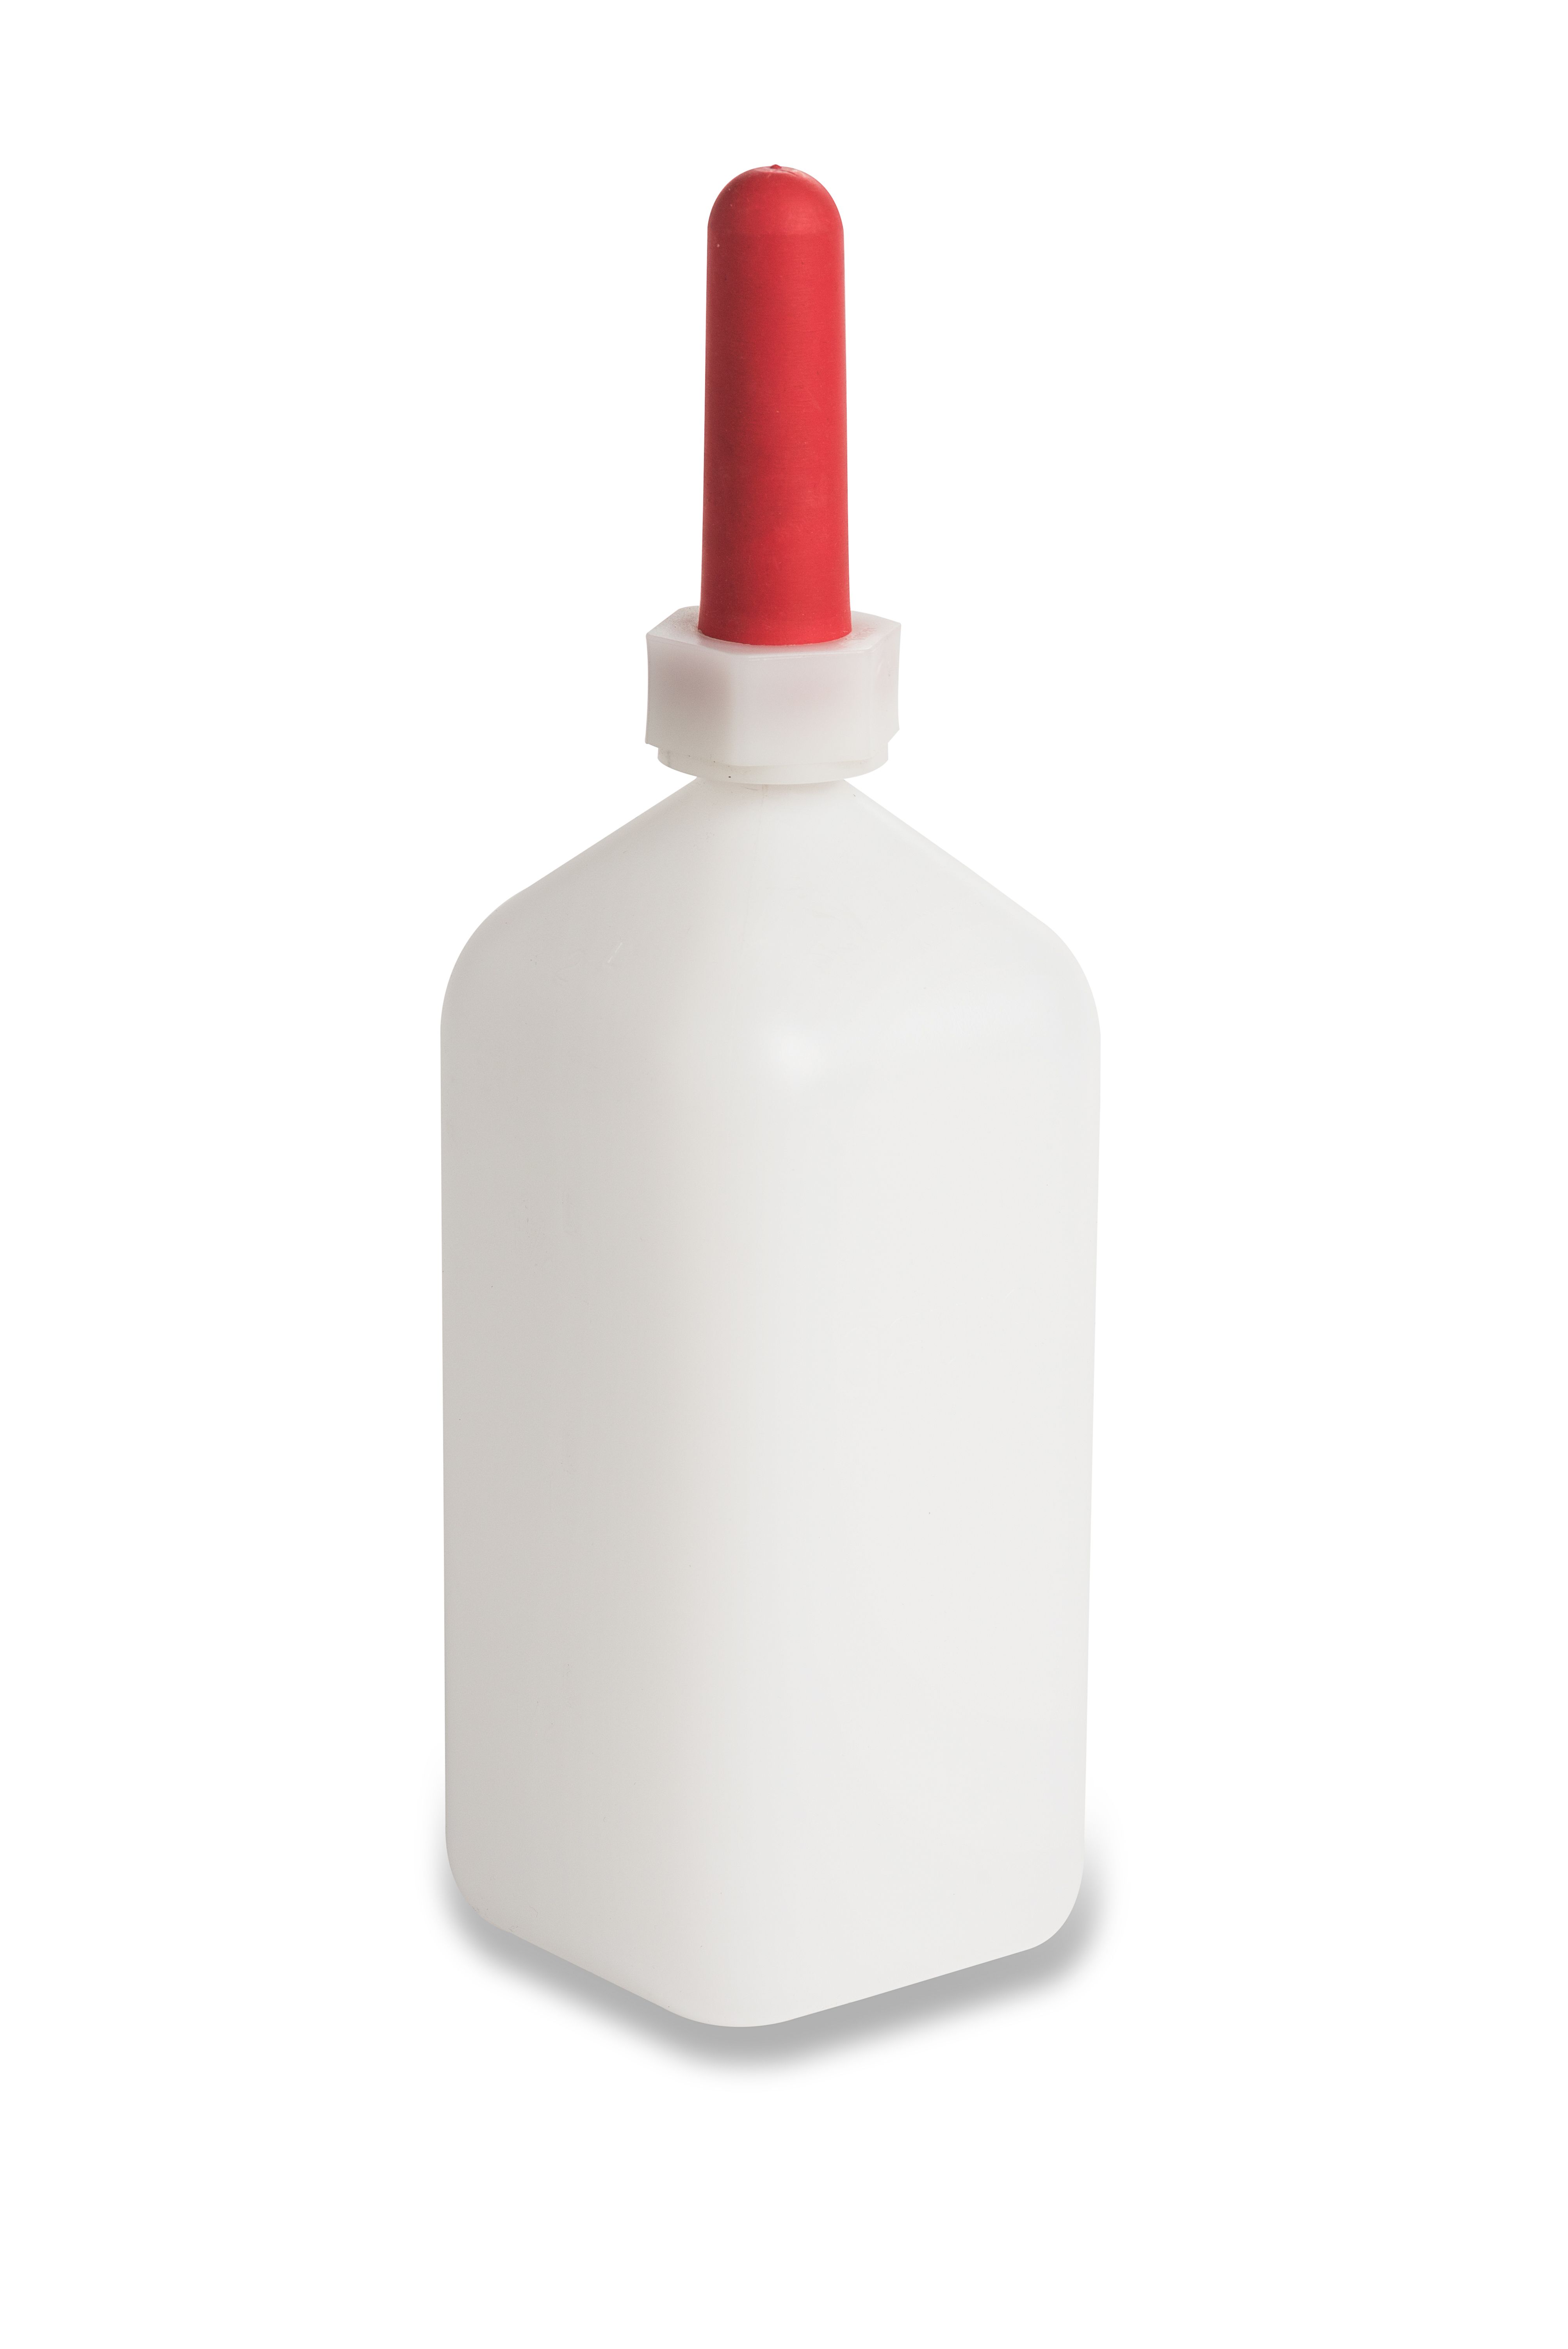 Kälberaufzucht - Tränkeflasche 2 Liter HD 222